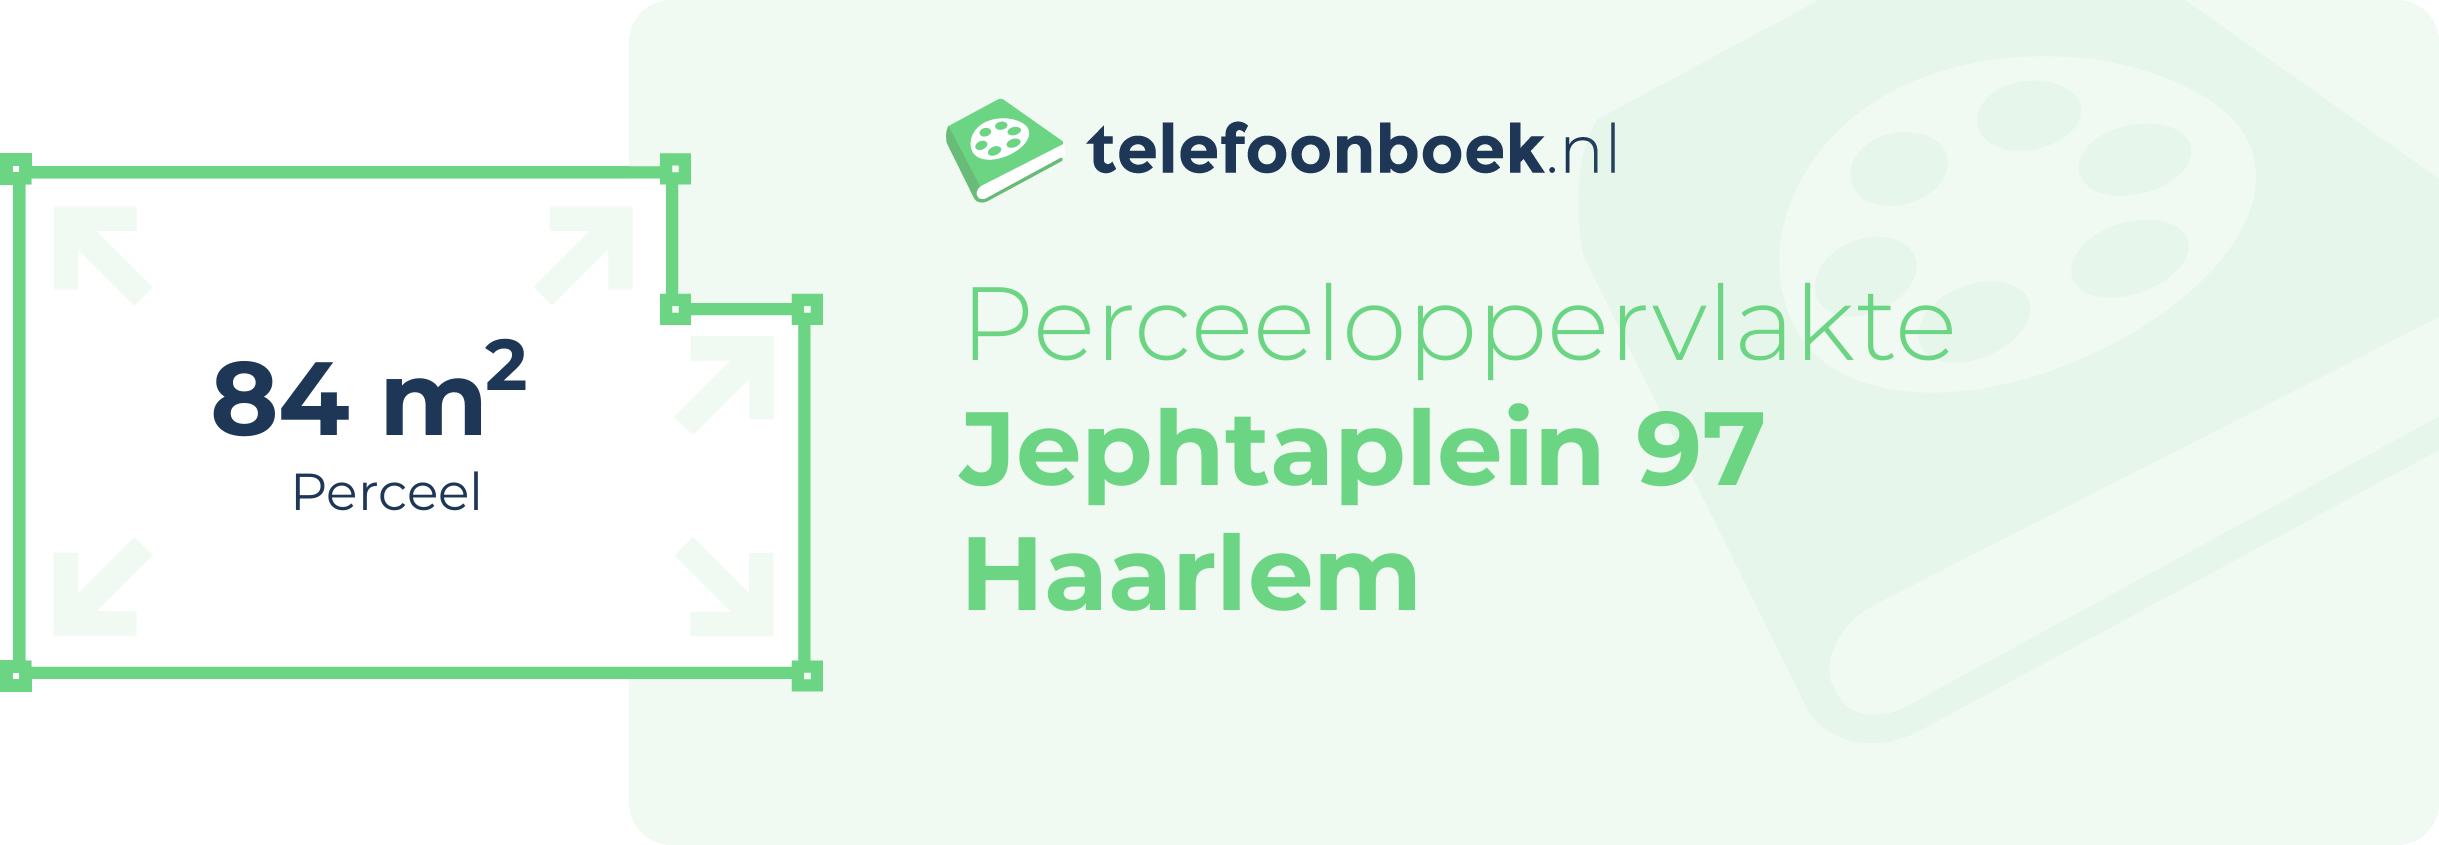 Perceeloppervlakte Jephtaplein 97 Haarlem